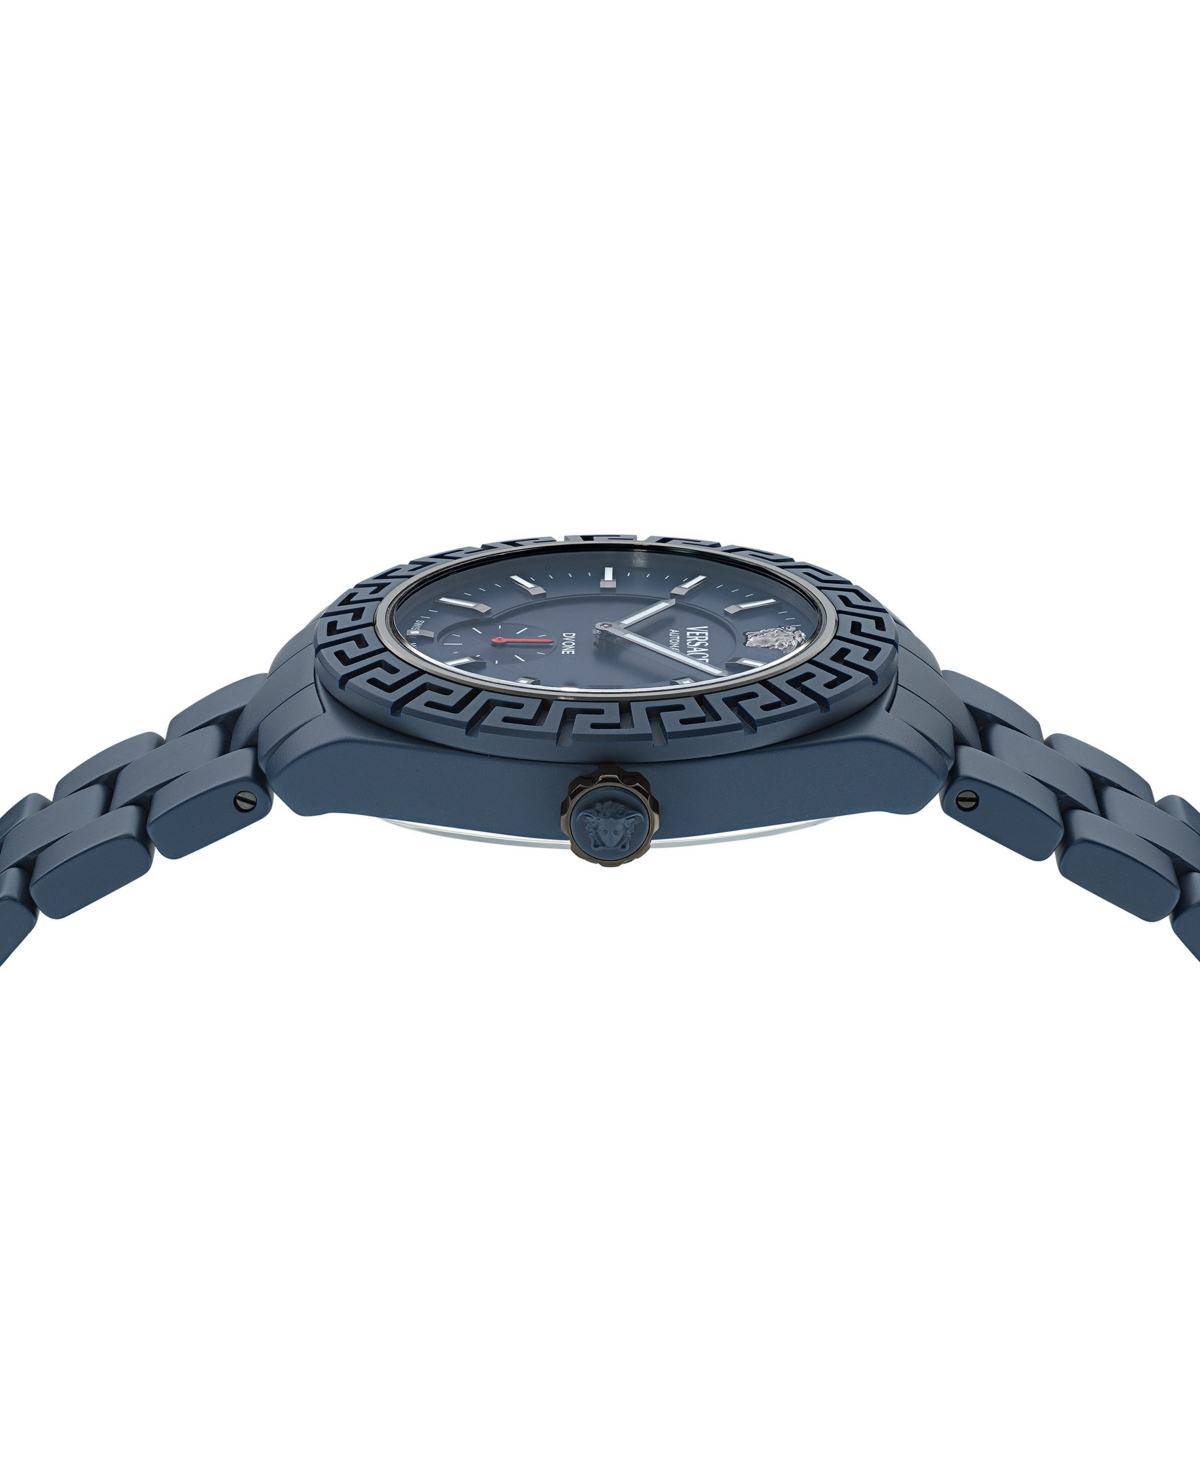 Shop Versace Men's Swiss Automatic Blue Ceramic Bracelet Watch 43mm